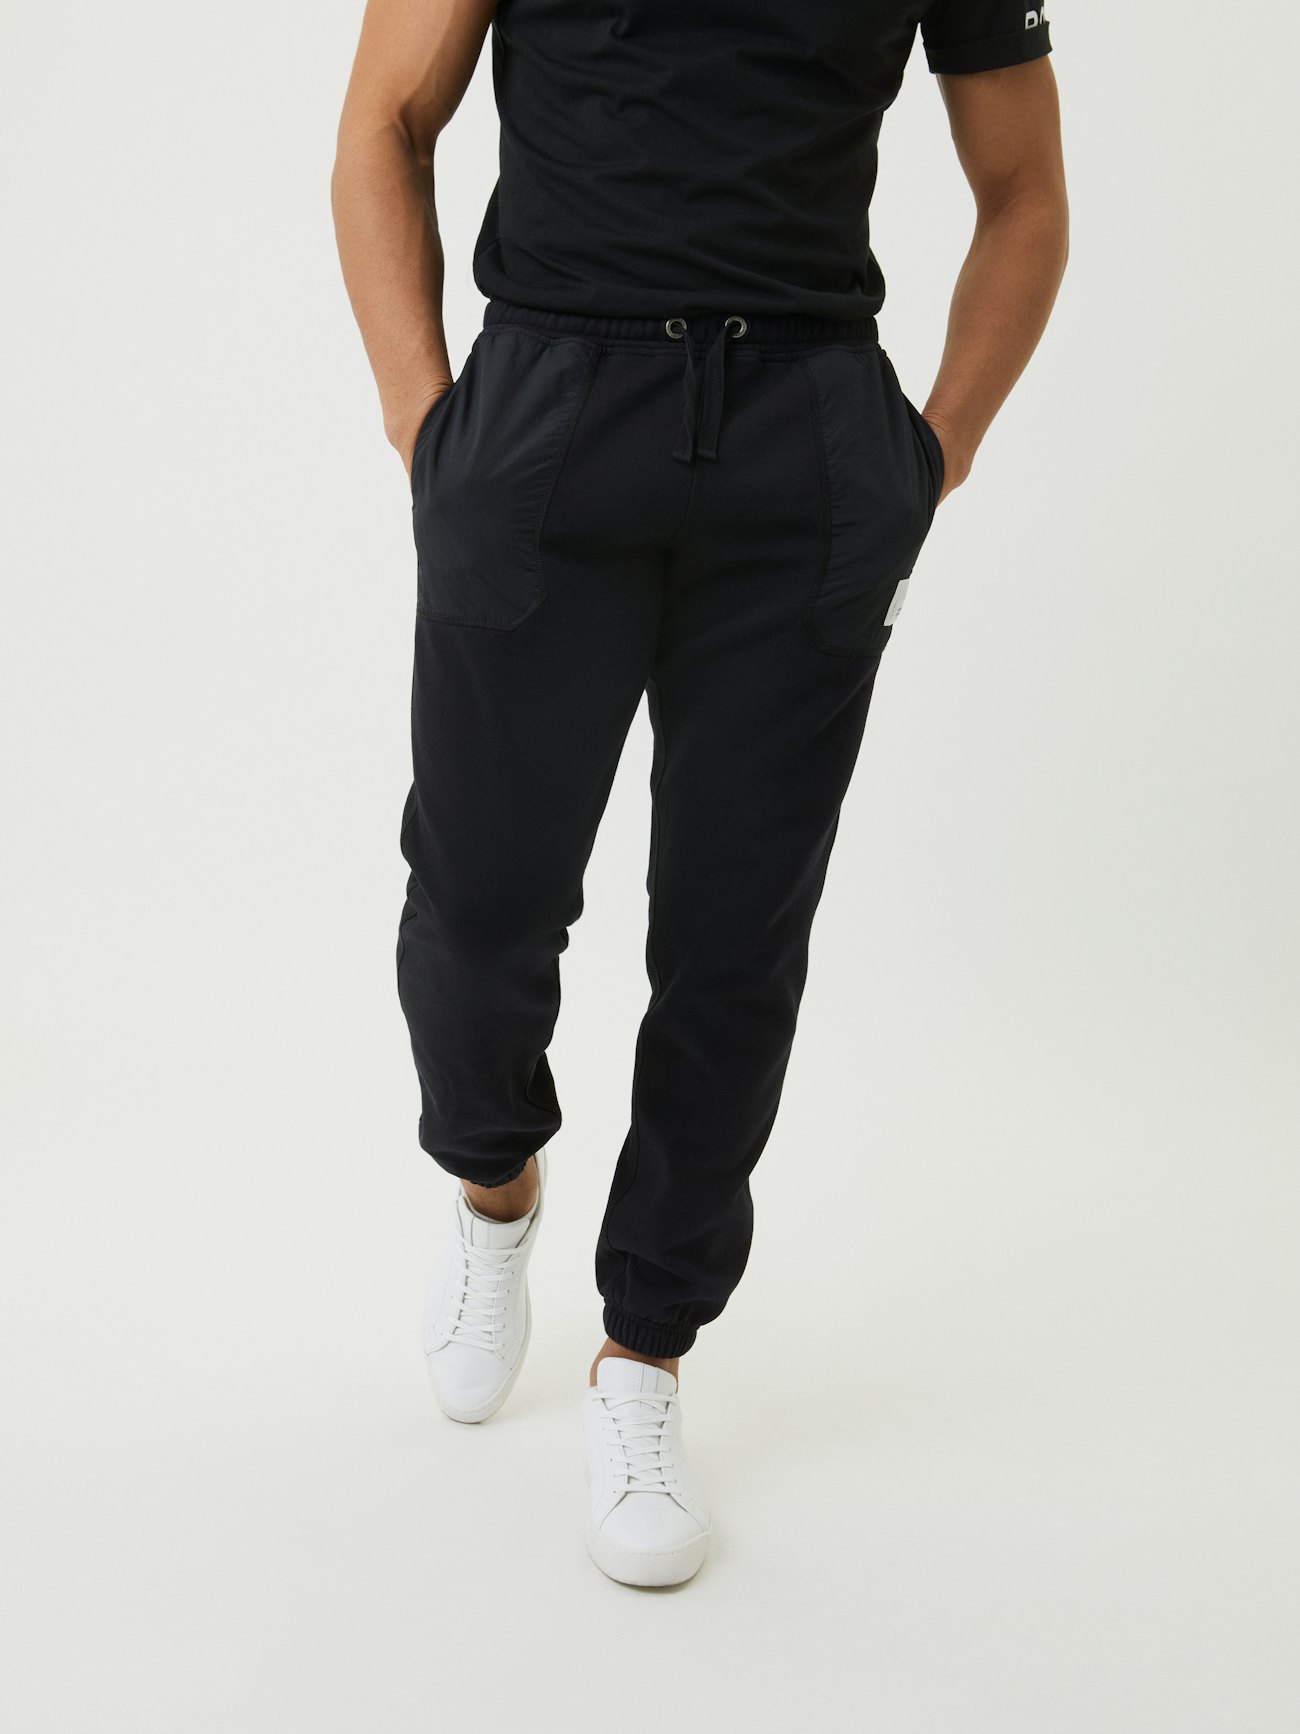 Jeans Blanc Homme, Pants Coton Polyestere Training Cargo Noir